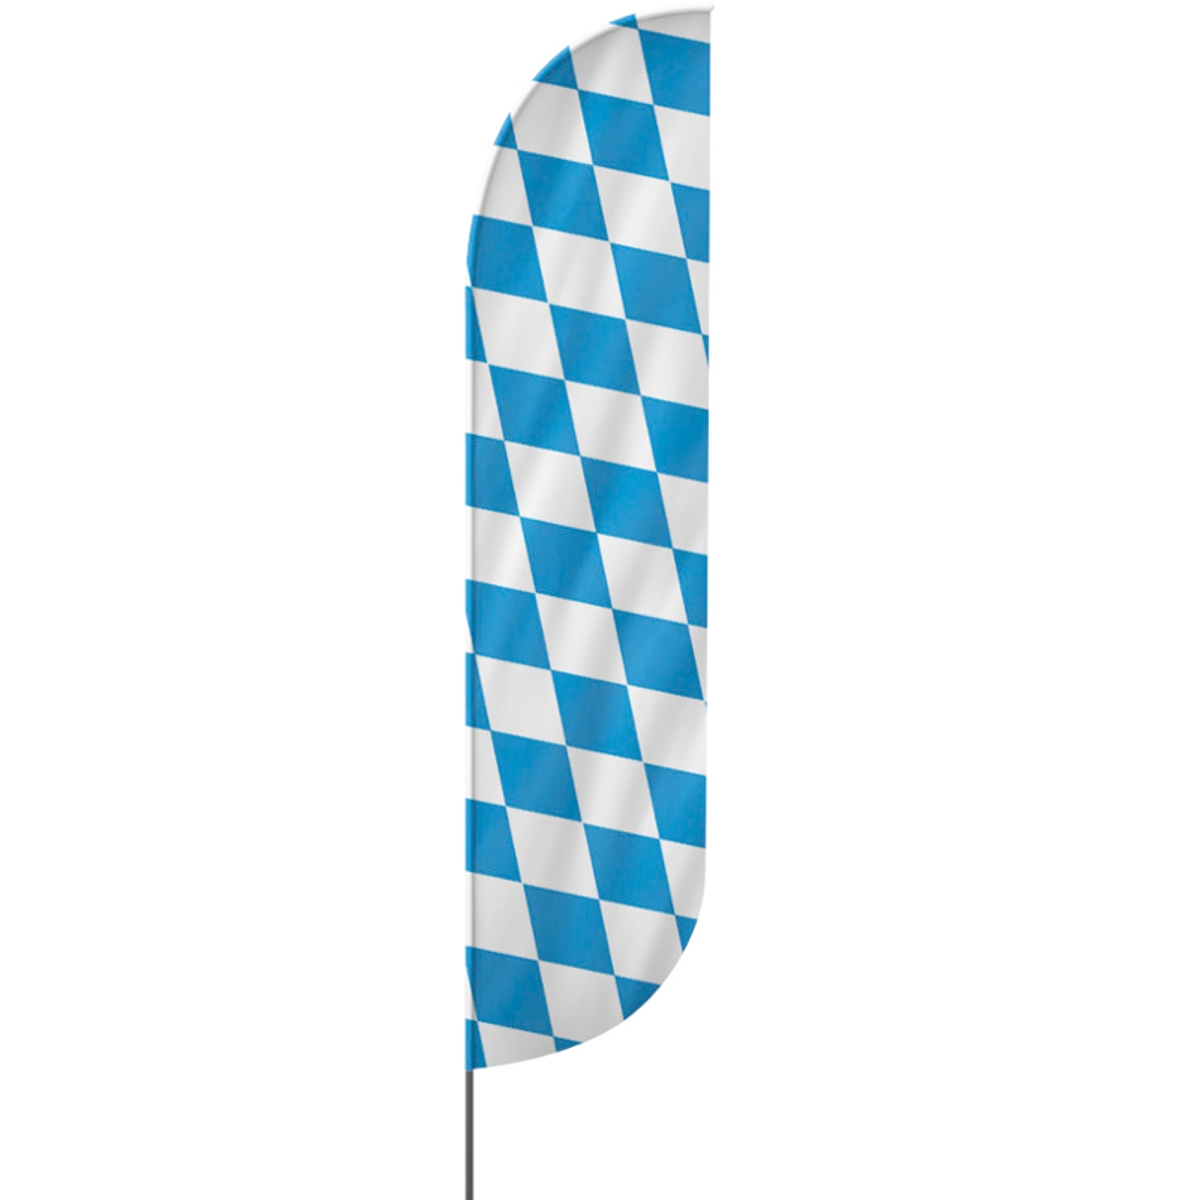 Convex | Oktoberfest Beachflag, blau weiß, verschiedene Größen, V1